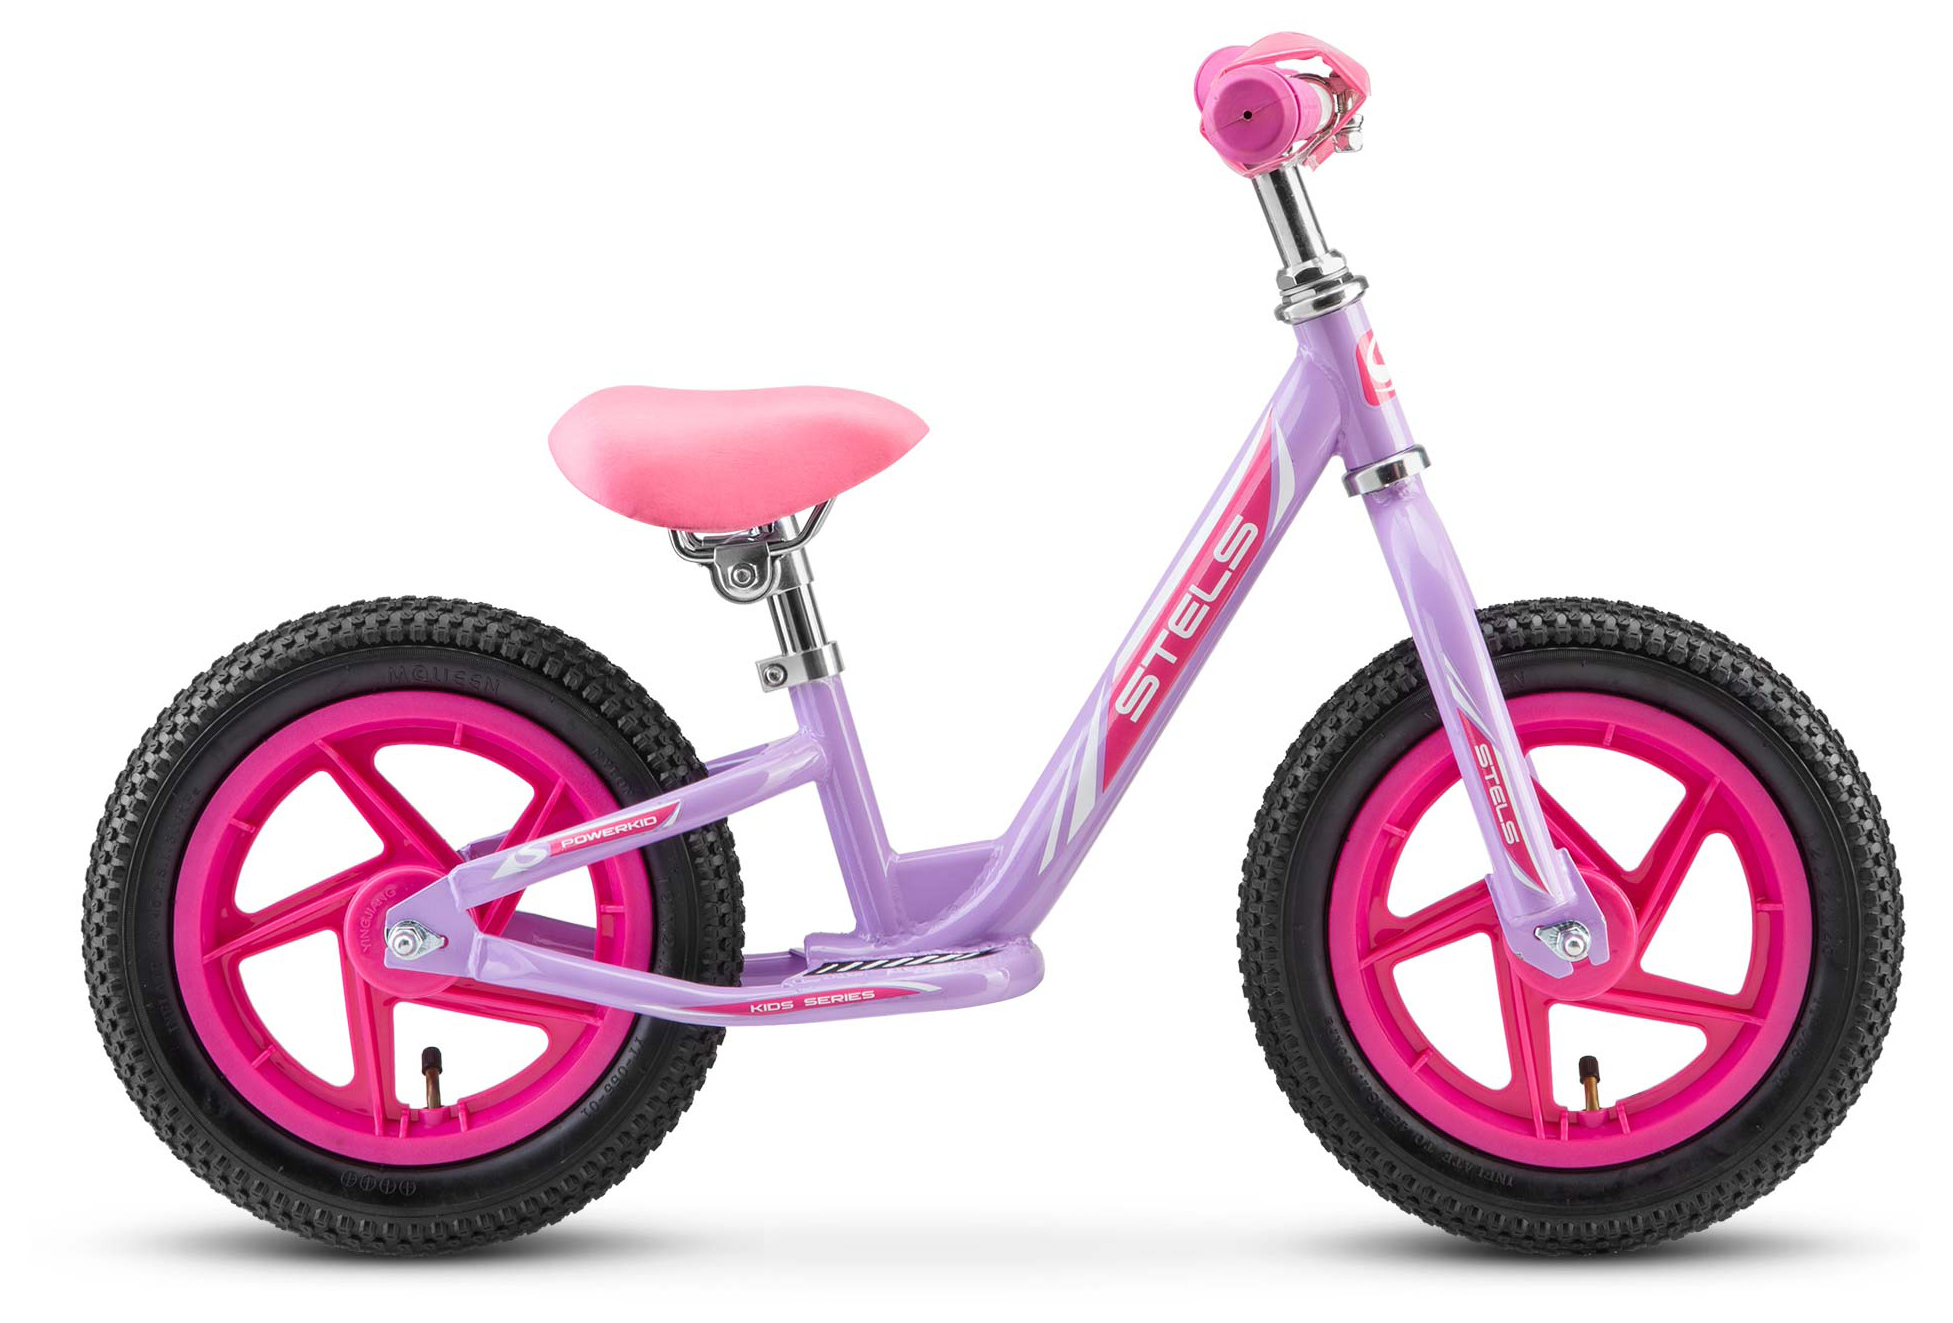  Отзывы о Детском велосипеде Stels Powerkid 12" Girl (V020) 2019